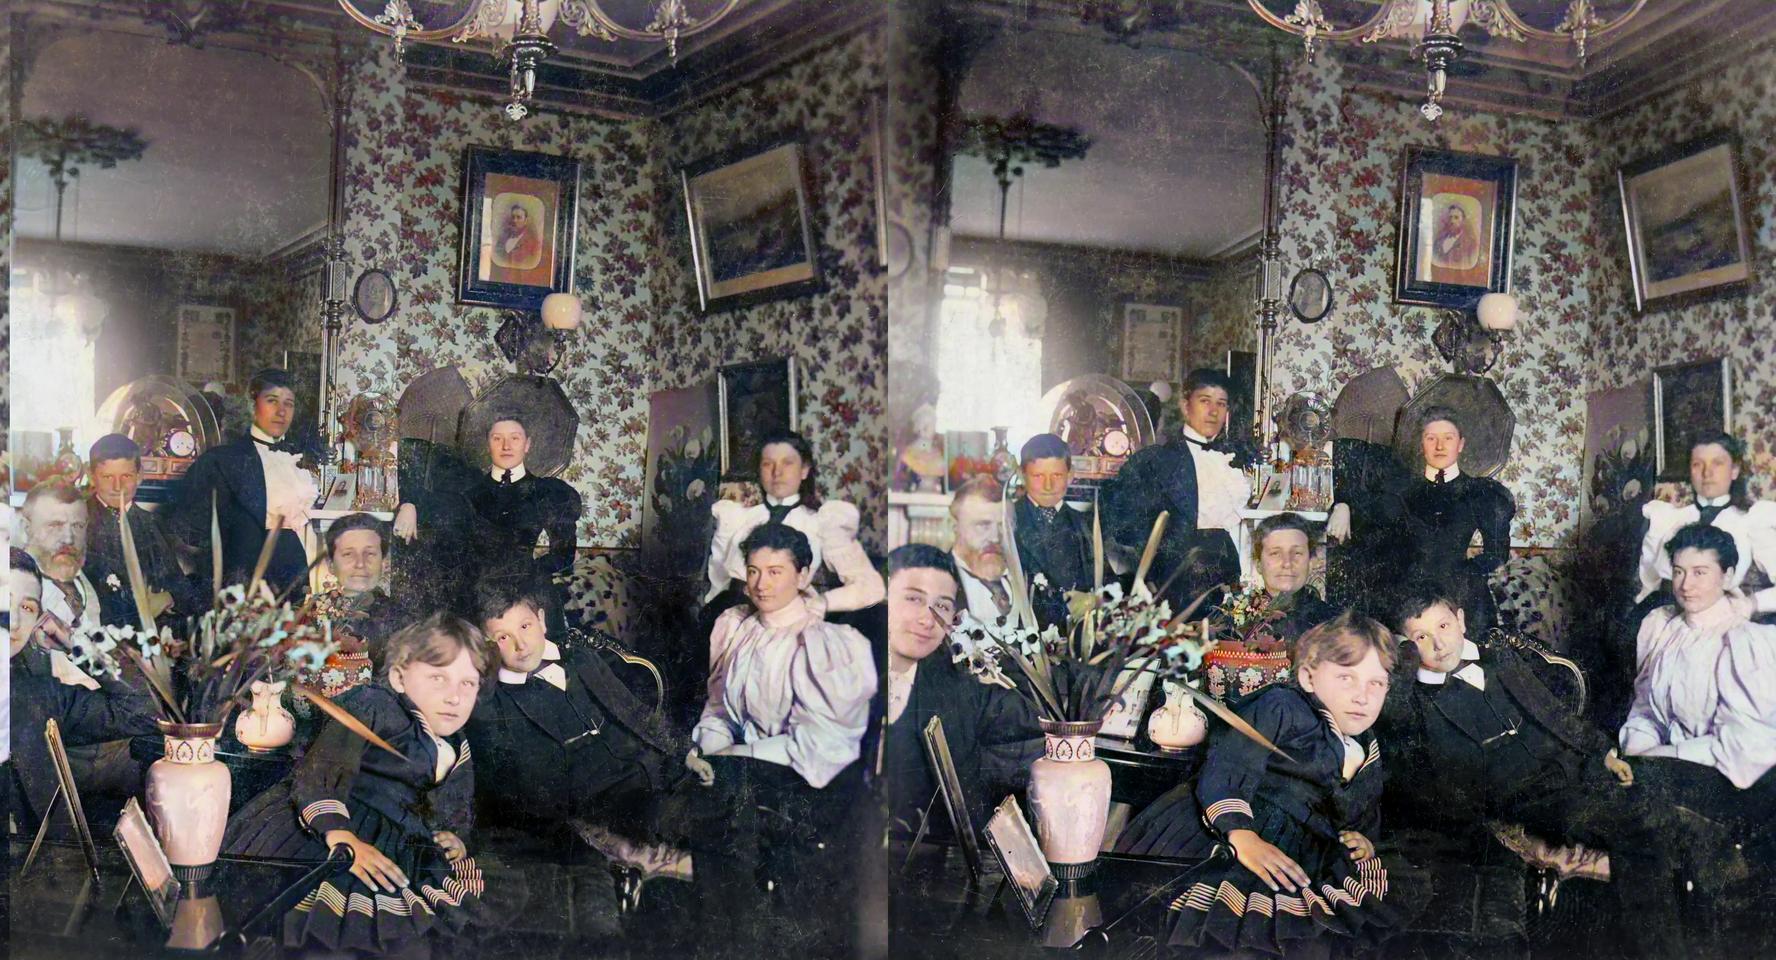 02 Richard ('King Dick') Seddon and his family circa 1899